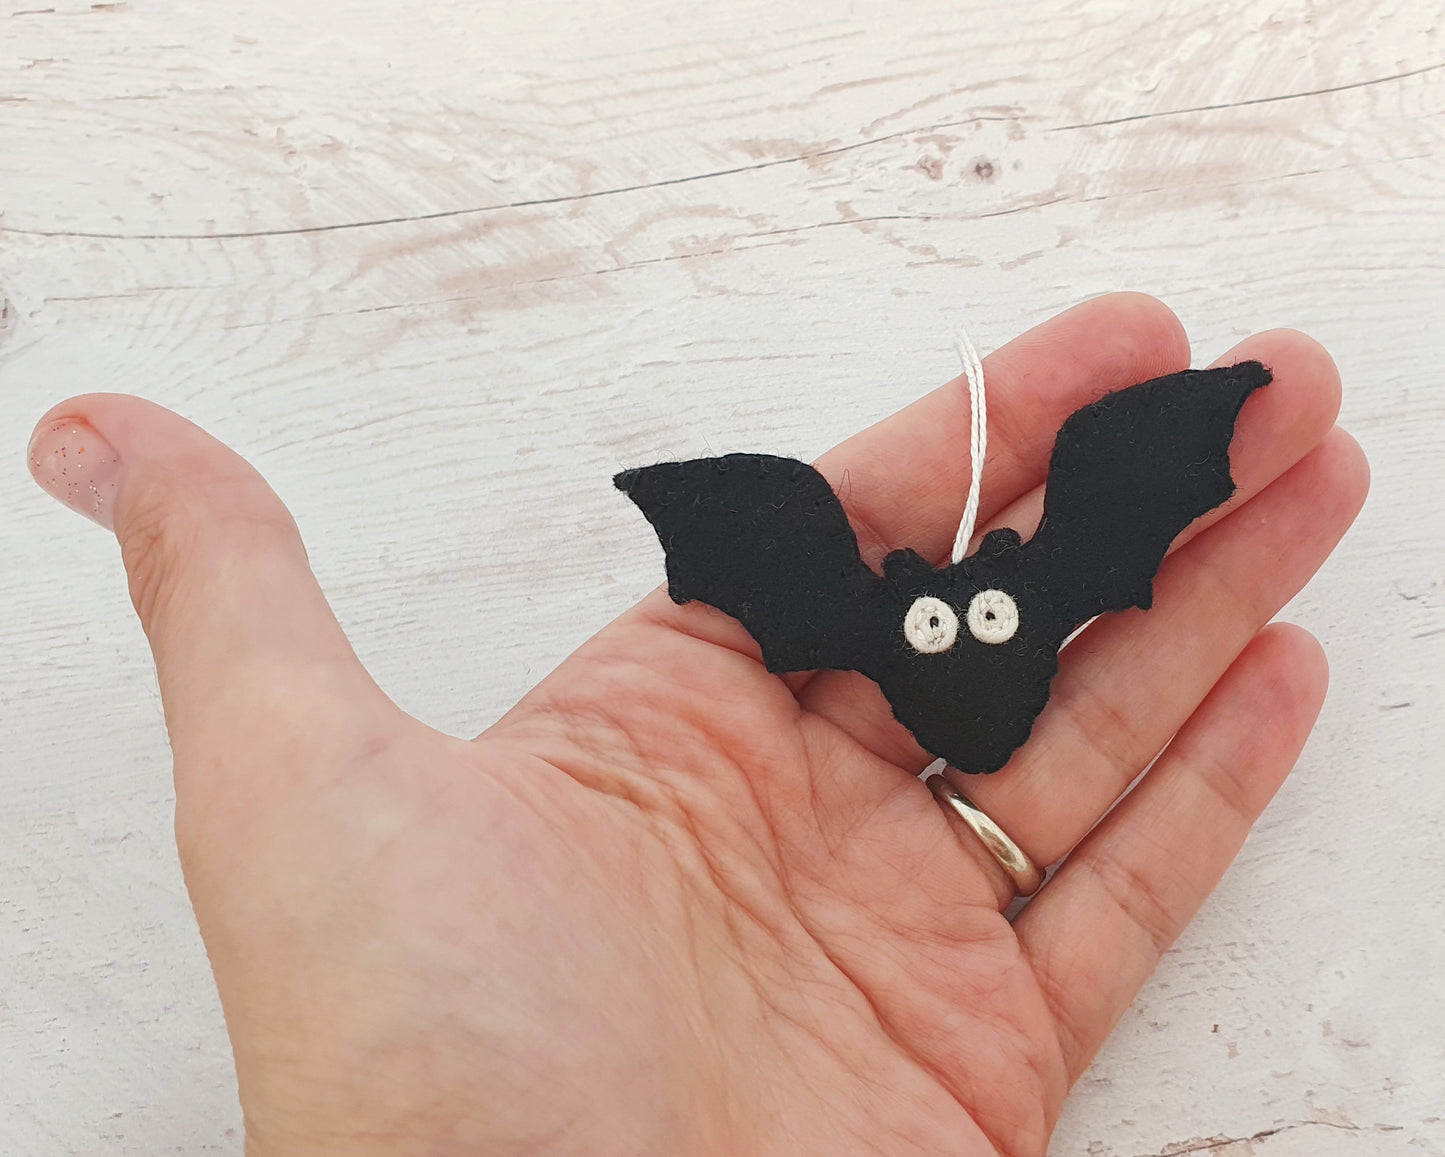 Mini BAT ornament SET OF 5 - halloween decor - handmande felt ornaments - felt bats